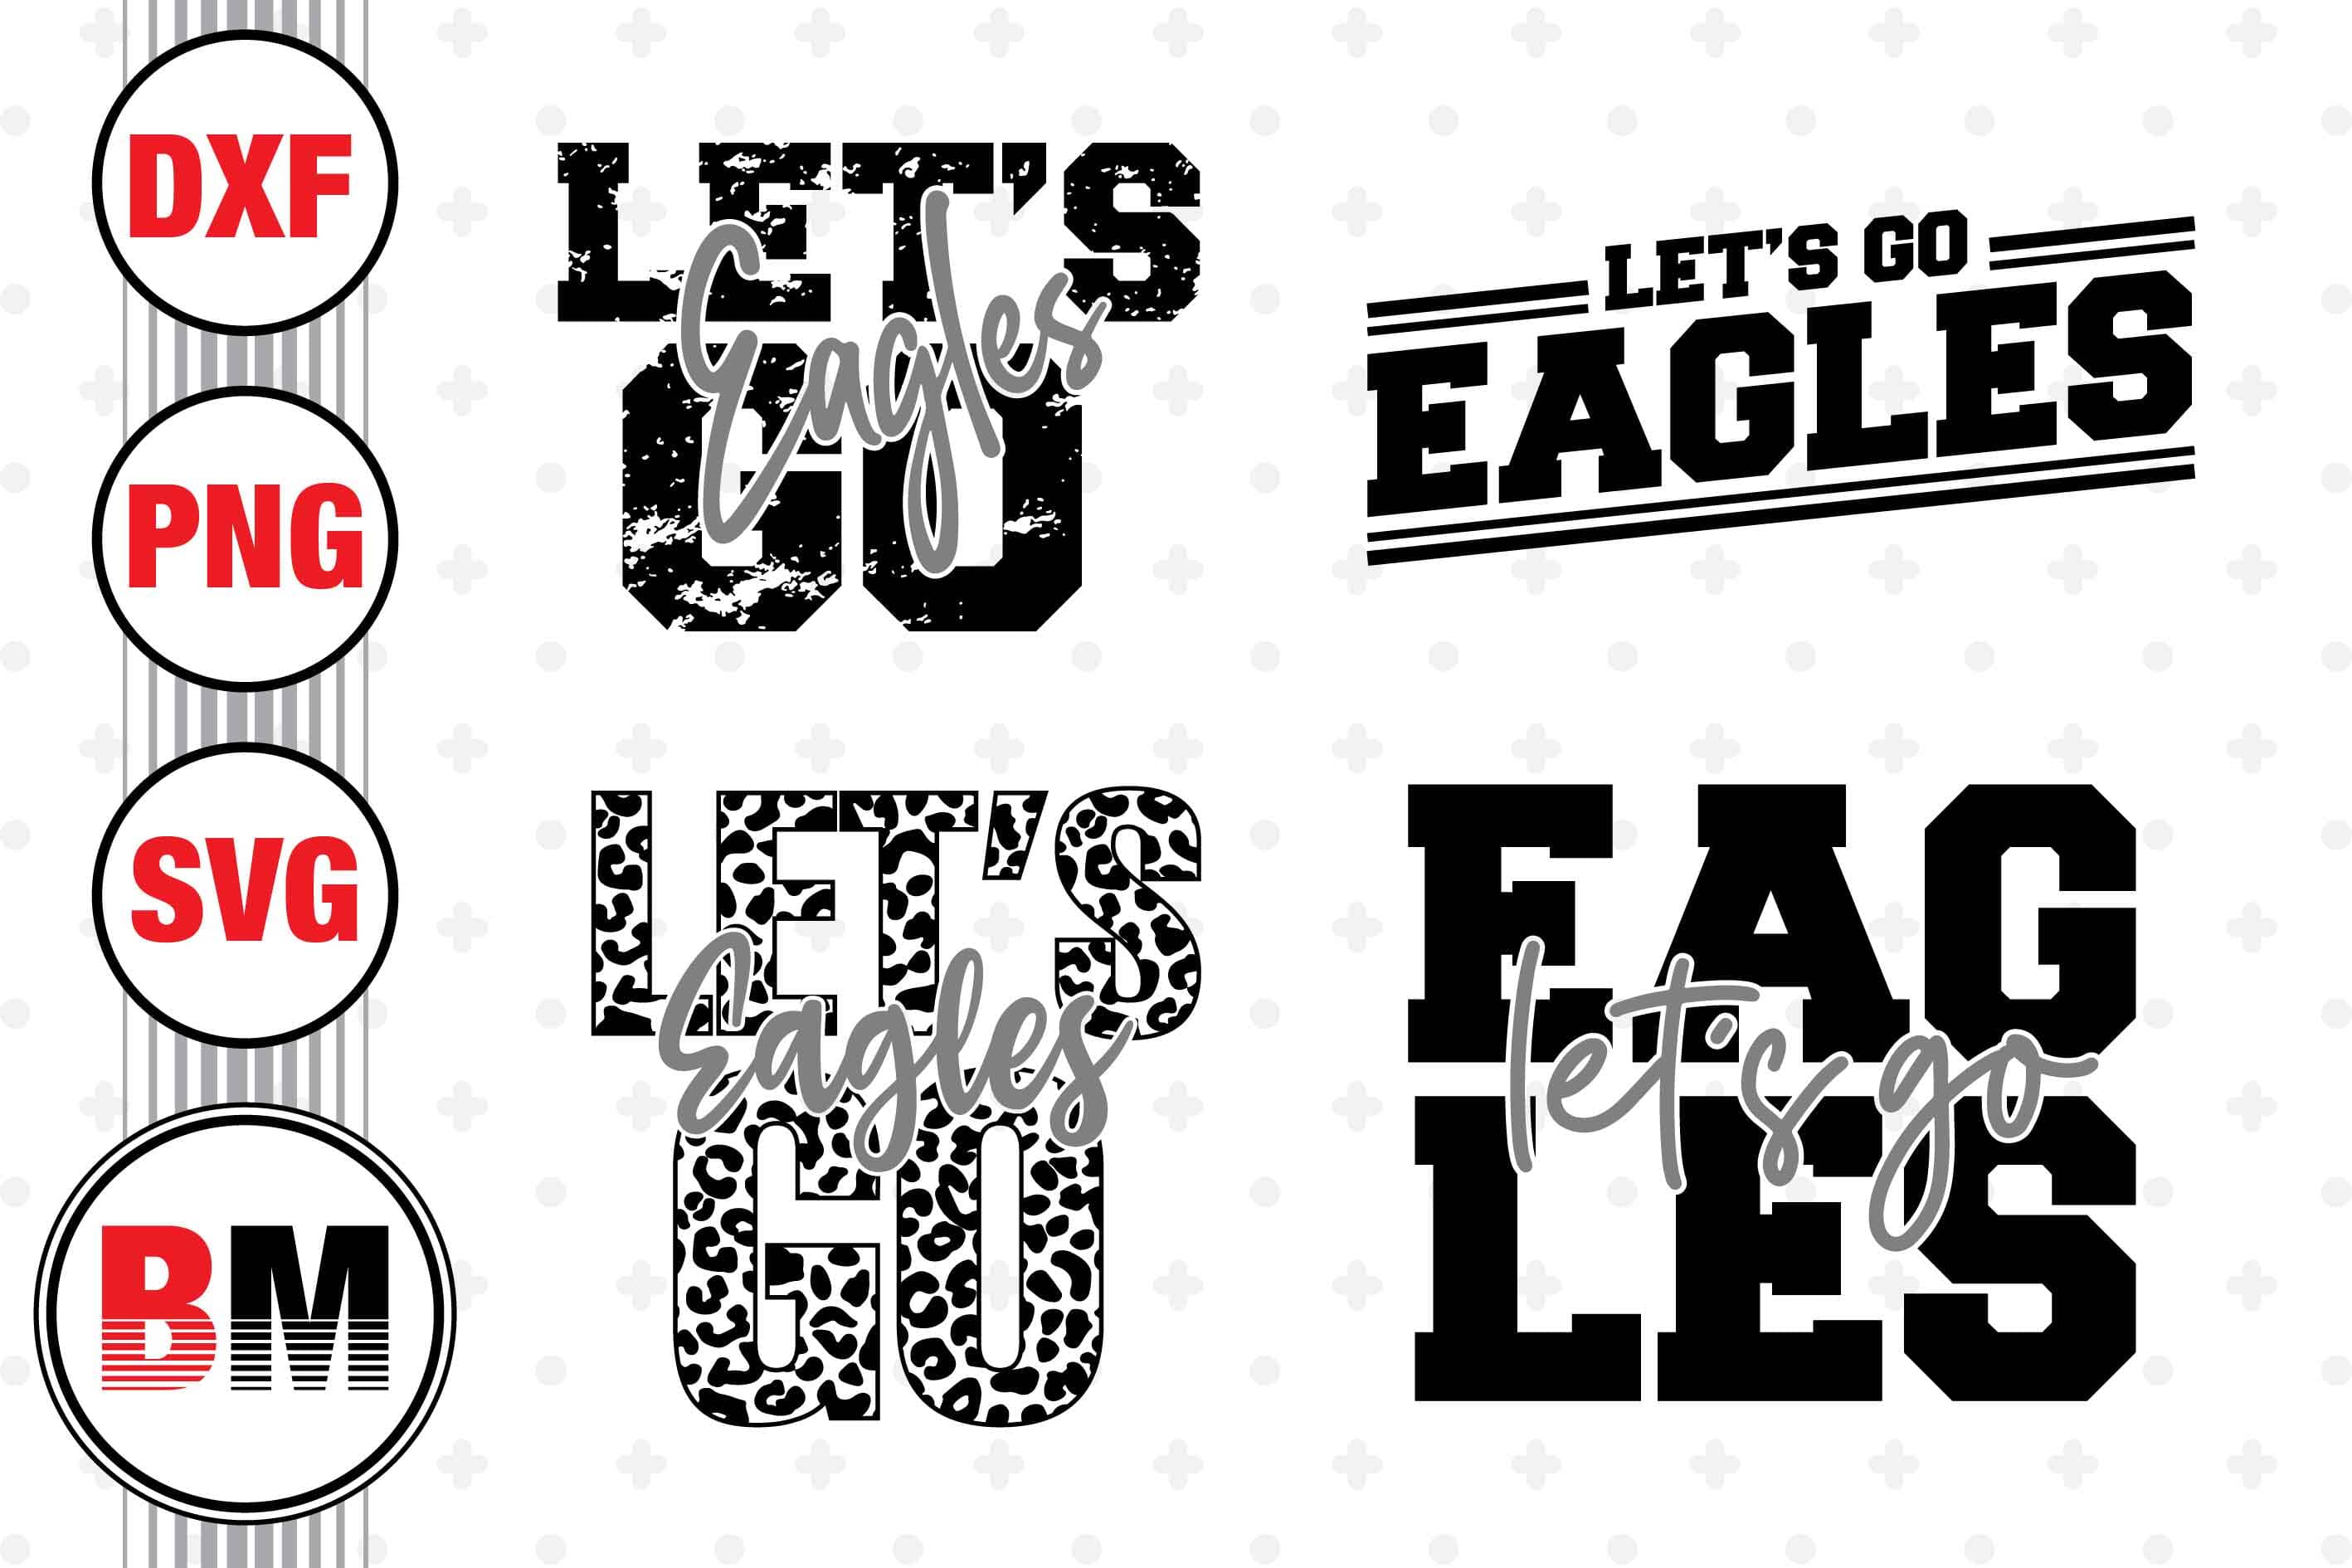 Let's Go Eagles SVG, PNG, DXF Files